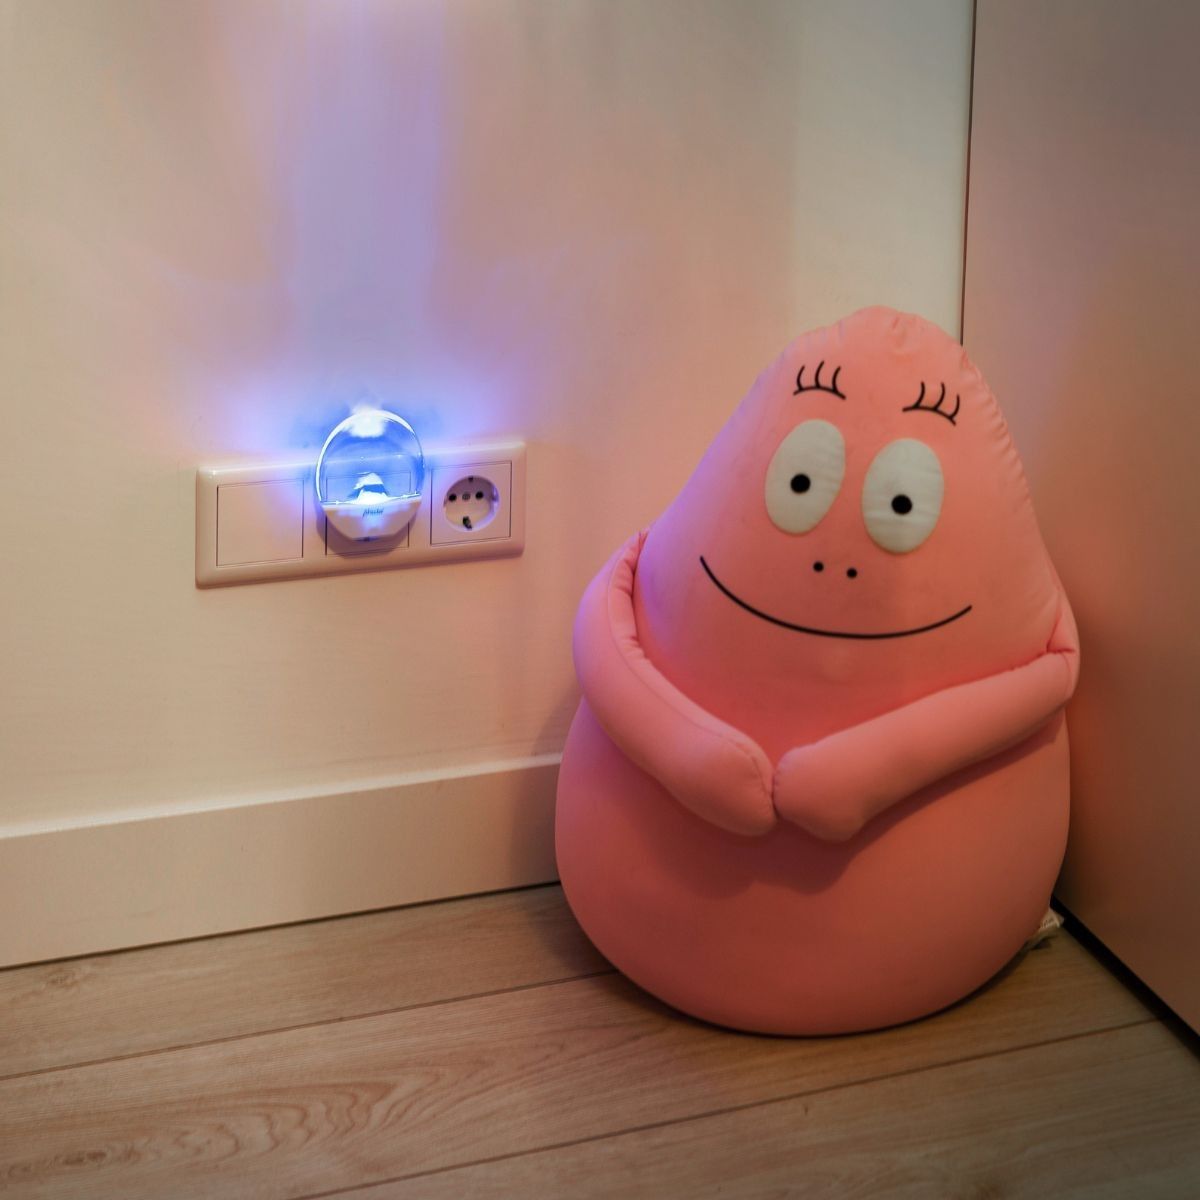 Verlicht de baby- of kinderkamer subtiel met het nachtlampje LED ANV van Alecto. Een energiezuinig lampje met lange levensduur. Wit lampje met blauwe verlichting. Ook bijvoorbeeld handig in de gang. VanZus